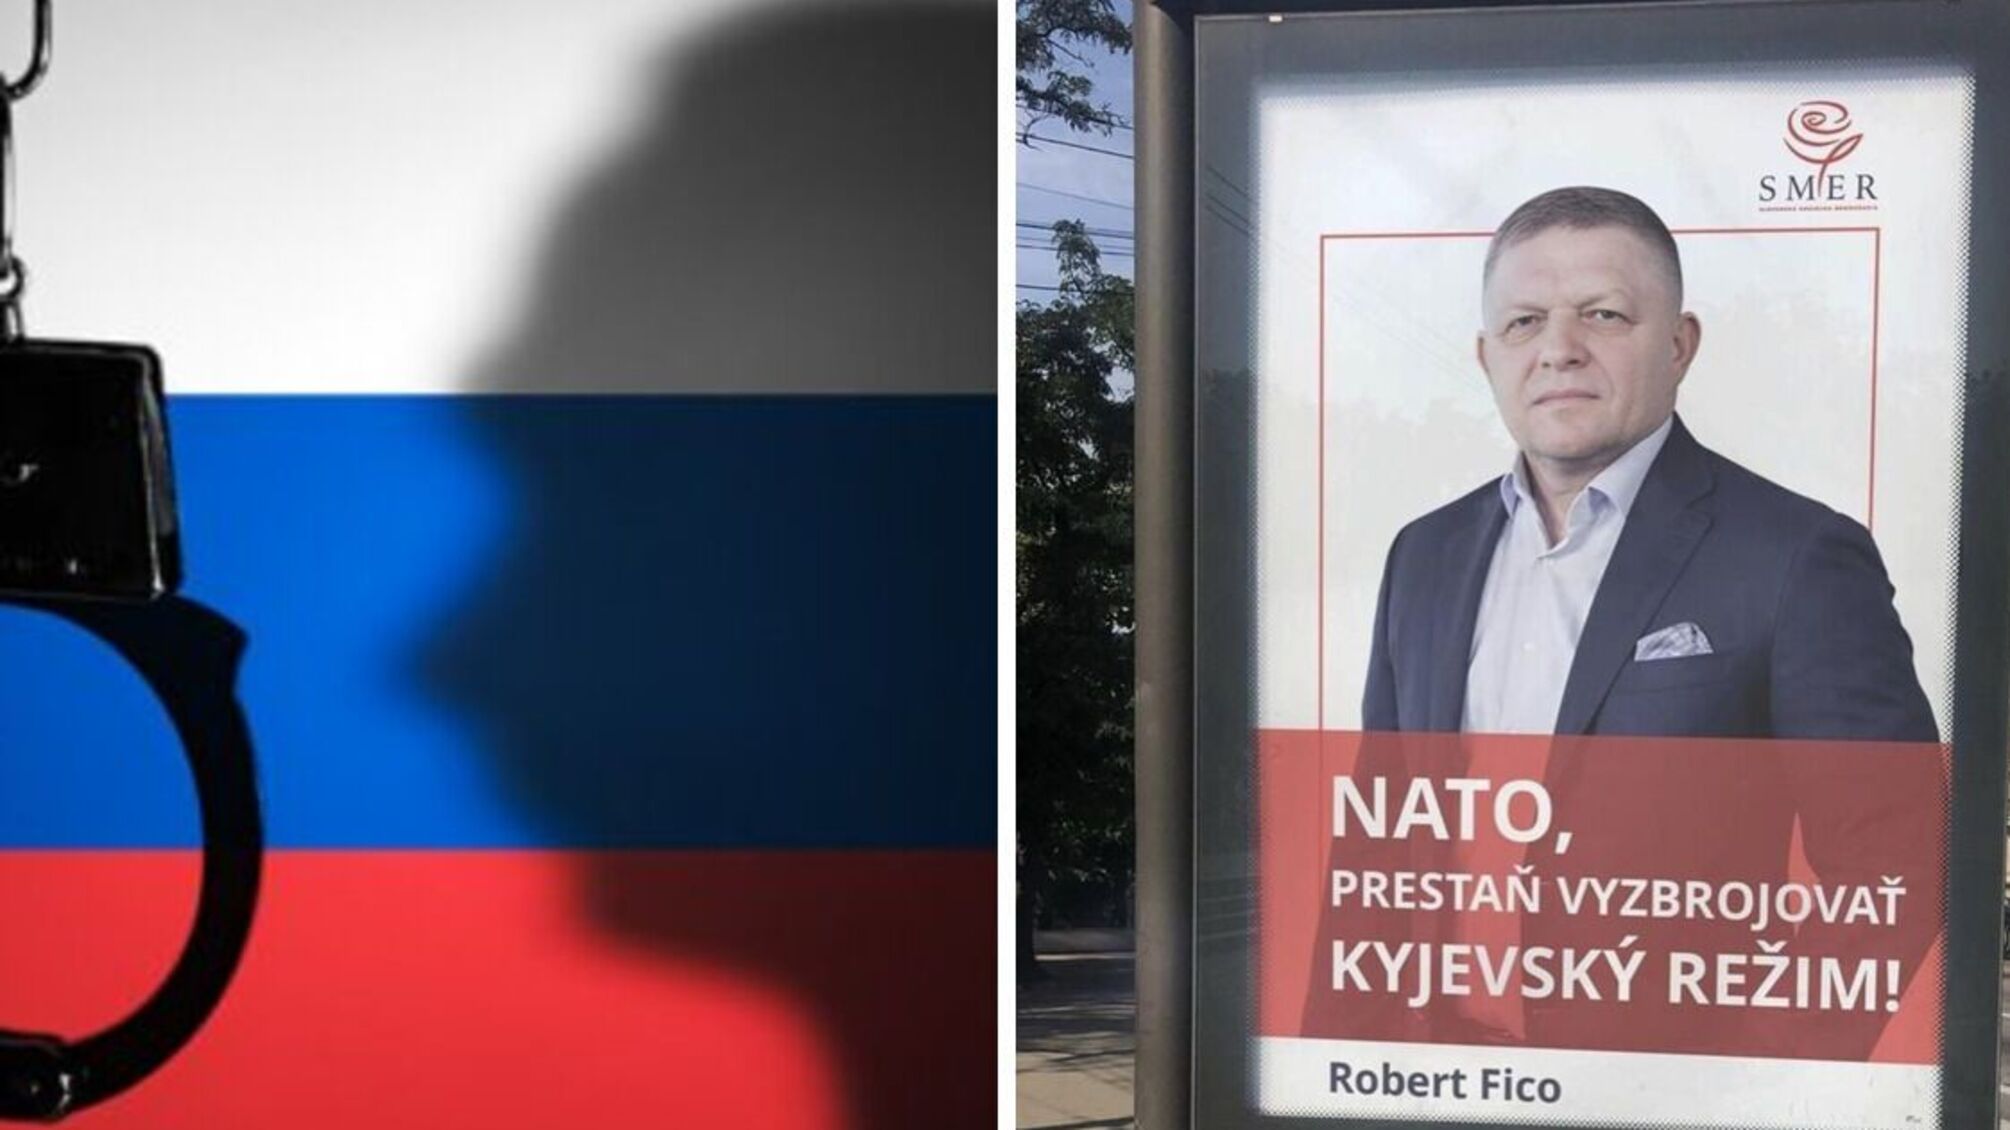 'Словацкий Орбан': накануне выборов в Словакии расследователи разоблачили связи экс-премьера Фицо с 'Газпромом' РФ